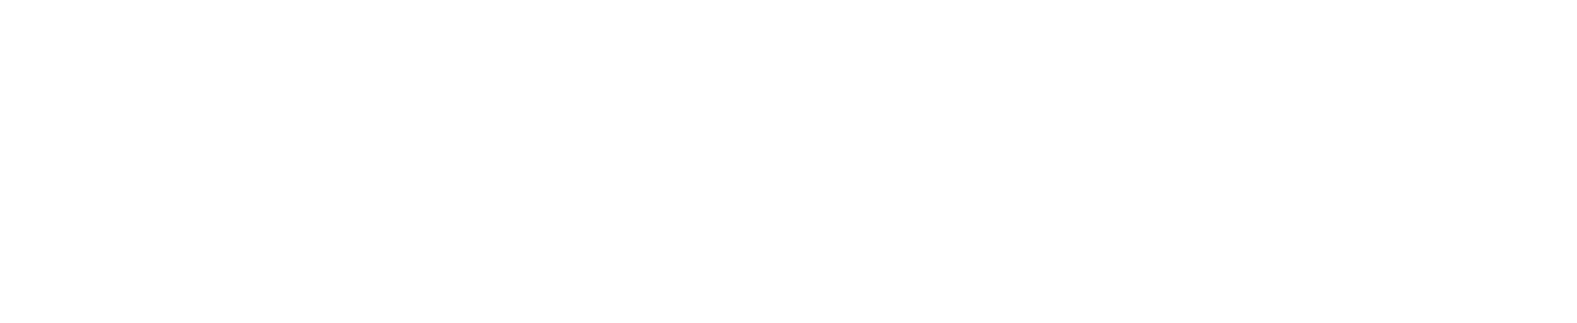 Mueller Water Products
 Logo groß für dunkle Hintergründe (transparentes PNG)